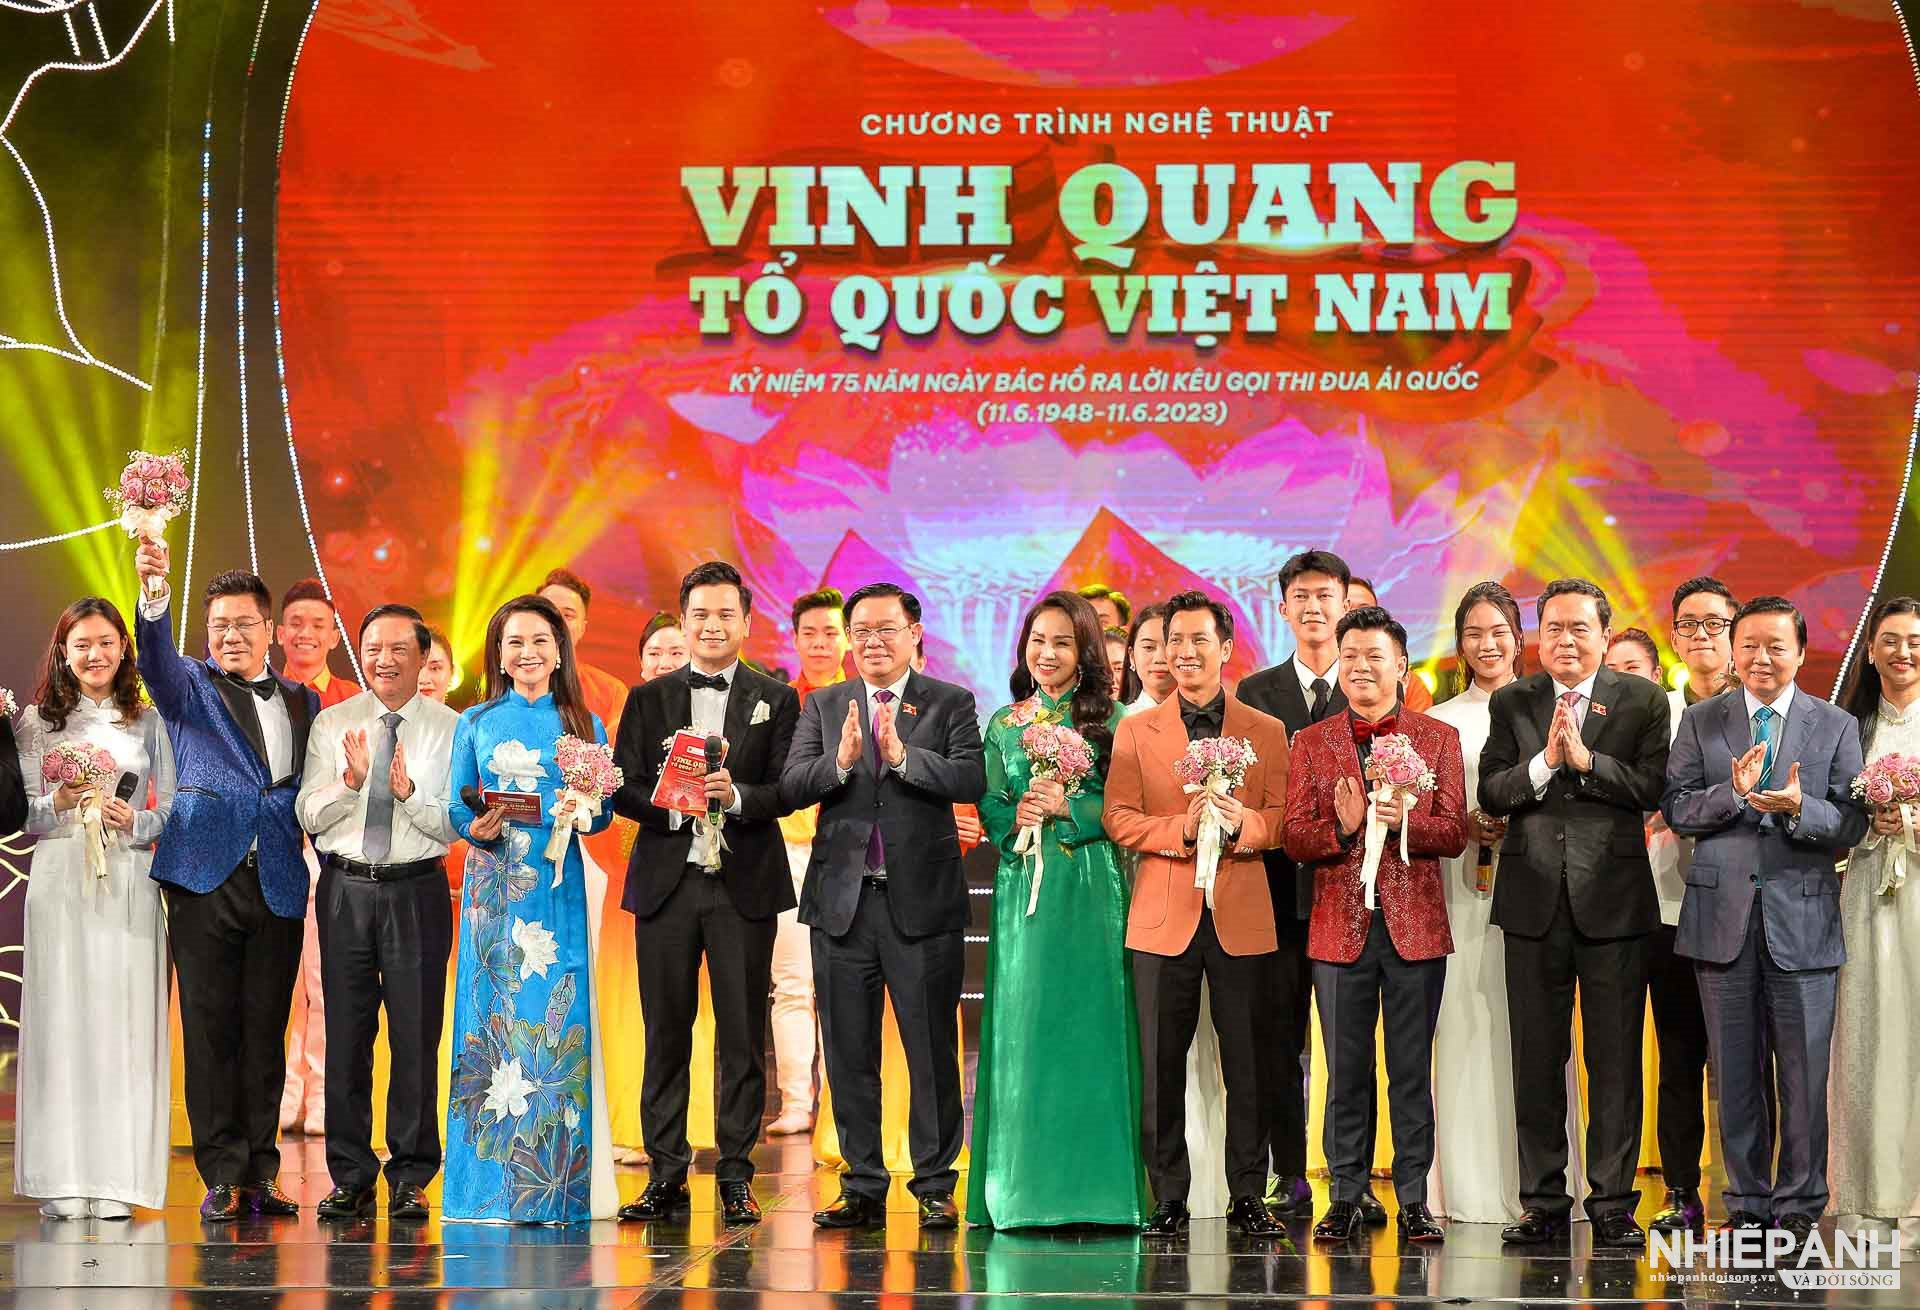 Chủ tịch Quốc hội Vương Đình Huệ dự Chương trình nghệ thuật Vinh quang Tổ quốc Việt Nam